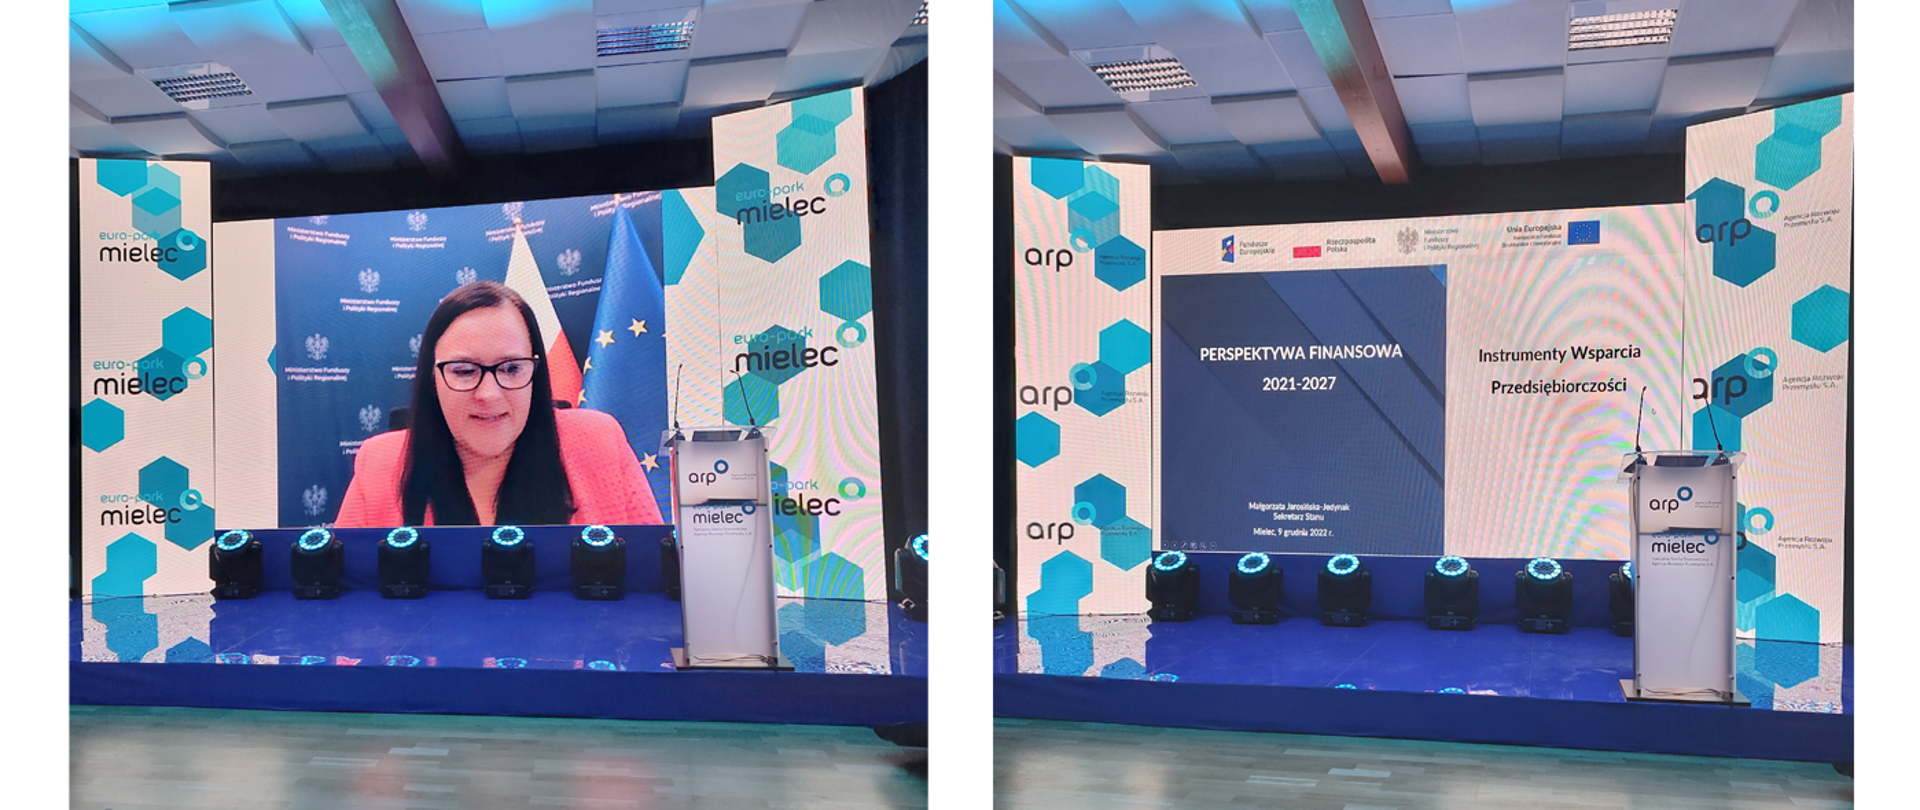 Kolaż dwóch zdjęć. Na pierwszym wiceminister Małgorzata Jarosińska-Jedynak na ekranie w sali konferencyjnej. Na drugim ekran z napisem Perspektywa Finansowa 2021-2027.